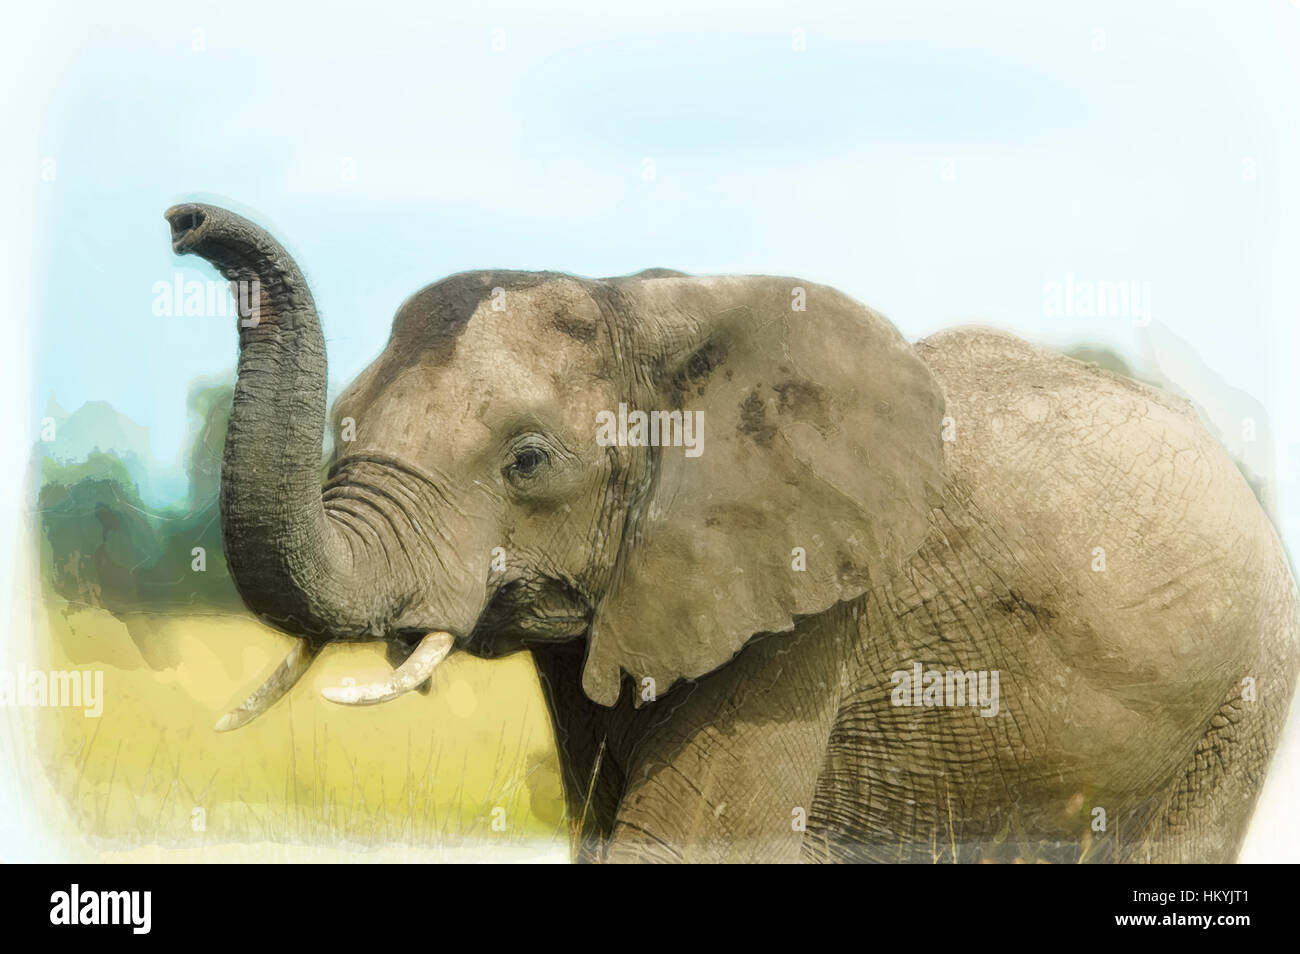 Amélioration de l'image numérique d'un gros plan d'un éléphant d'Afrique avec soulevées soulevées tronc. Photographié au Kenya, la réserve de Masai Mara Banque D'Images